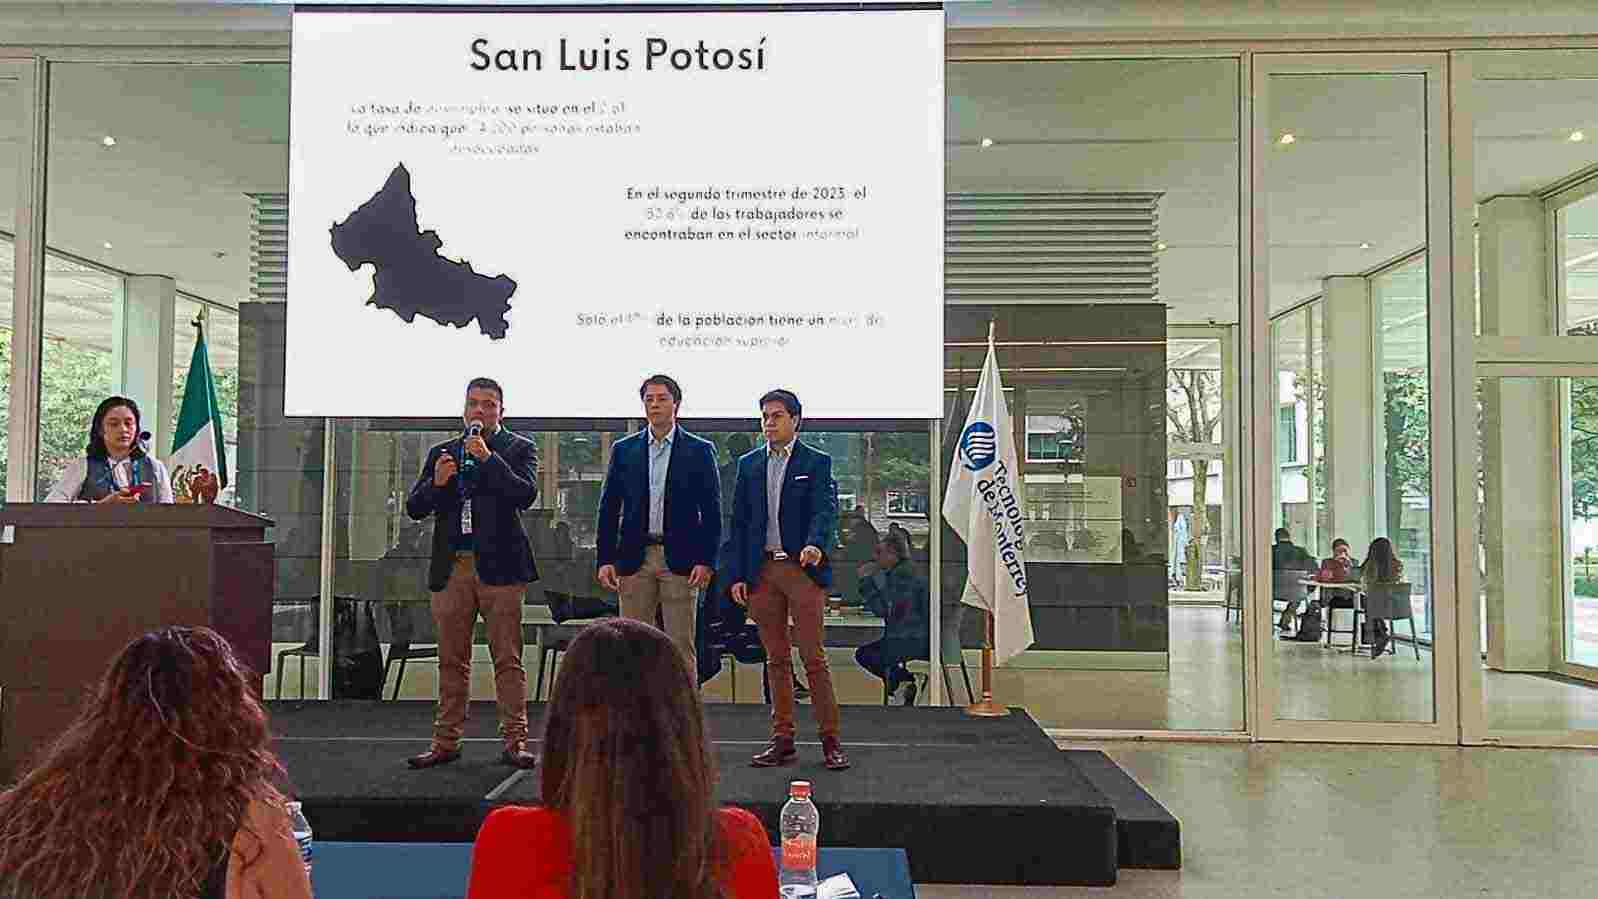 Eduardo Guevara, Sebastián Romero y Ricardo Carreño crean "Haz Paro", programa que combate el desempleo en San Luis Potosí.